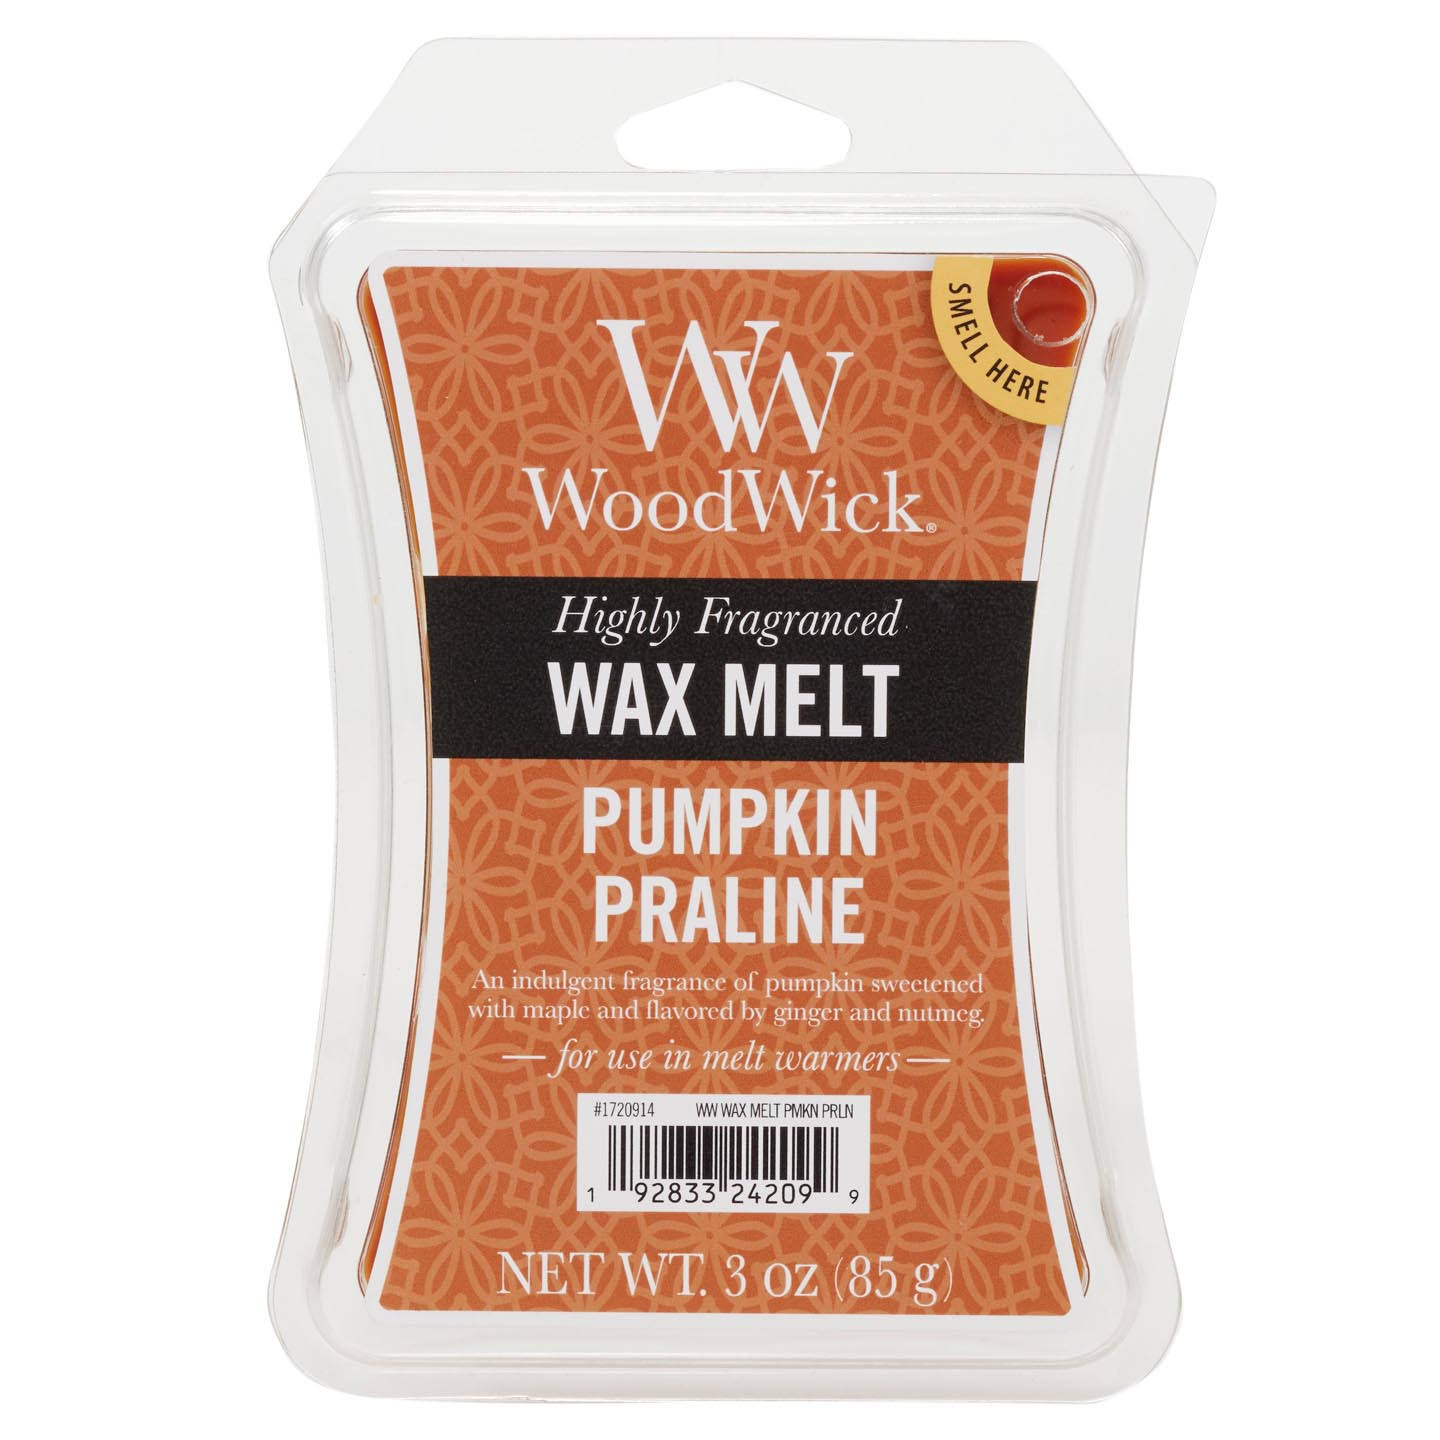 WoodWick Pumpkin Praline Wax Melt 3 oz